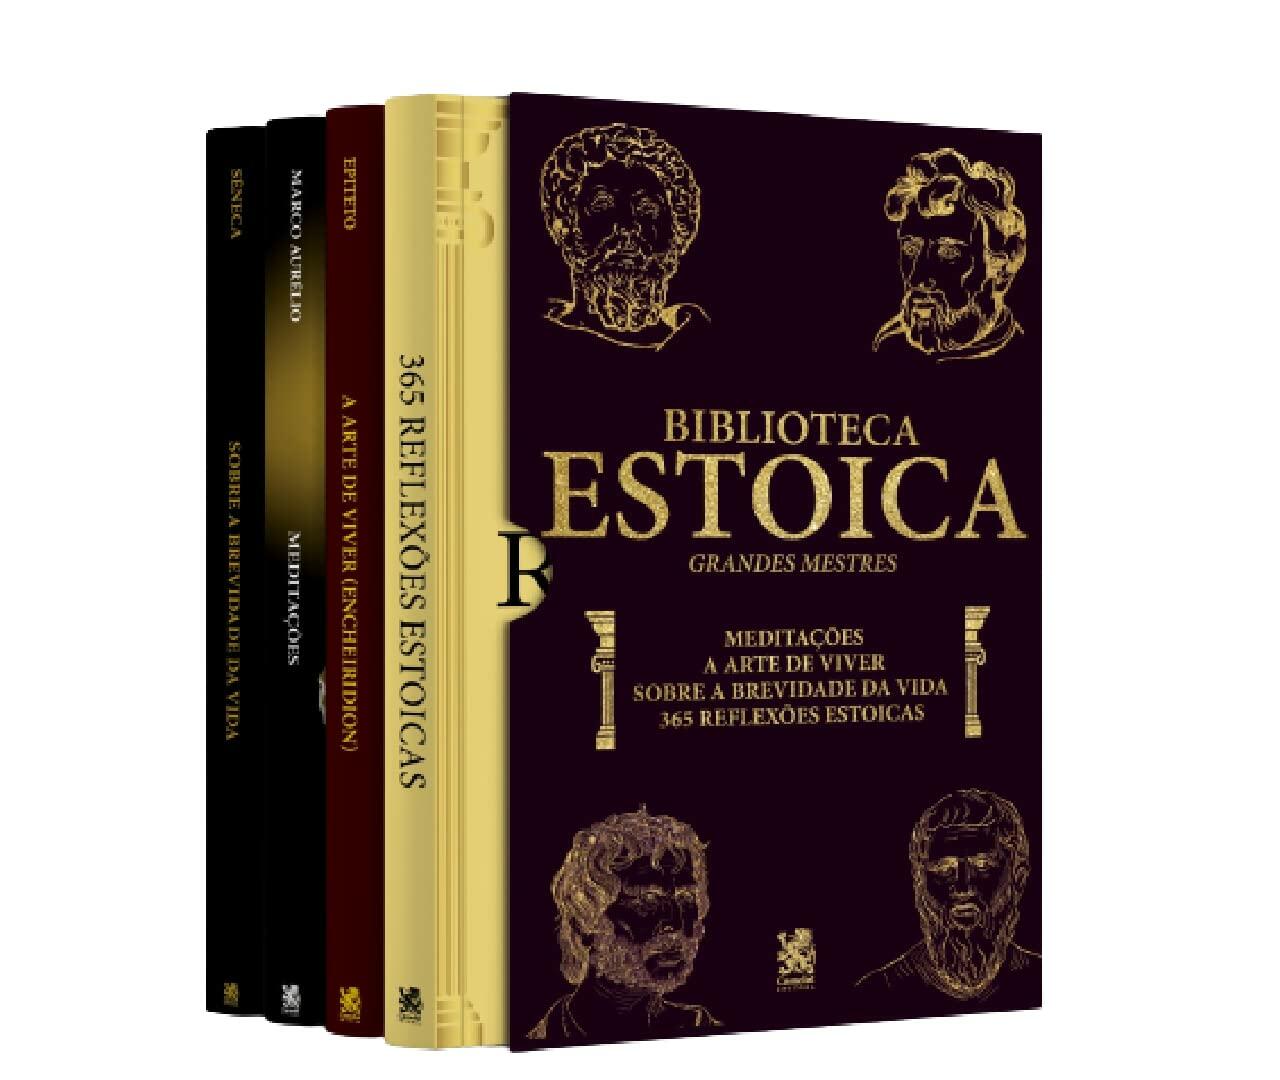 Biblioteca Estoica: Grandes Mestres Volume 01 - Box com 4 Livros